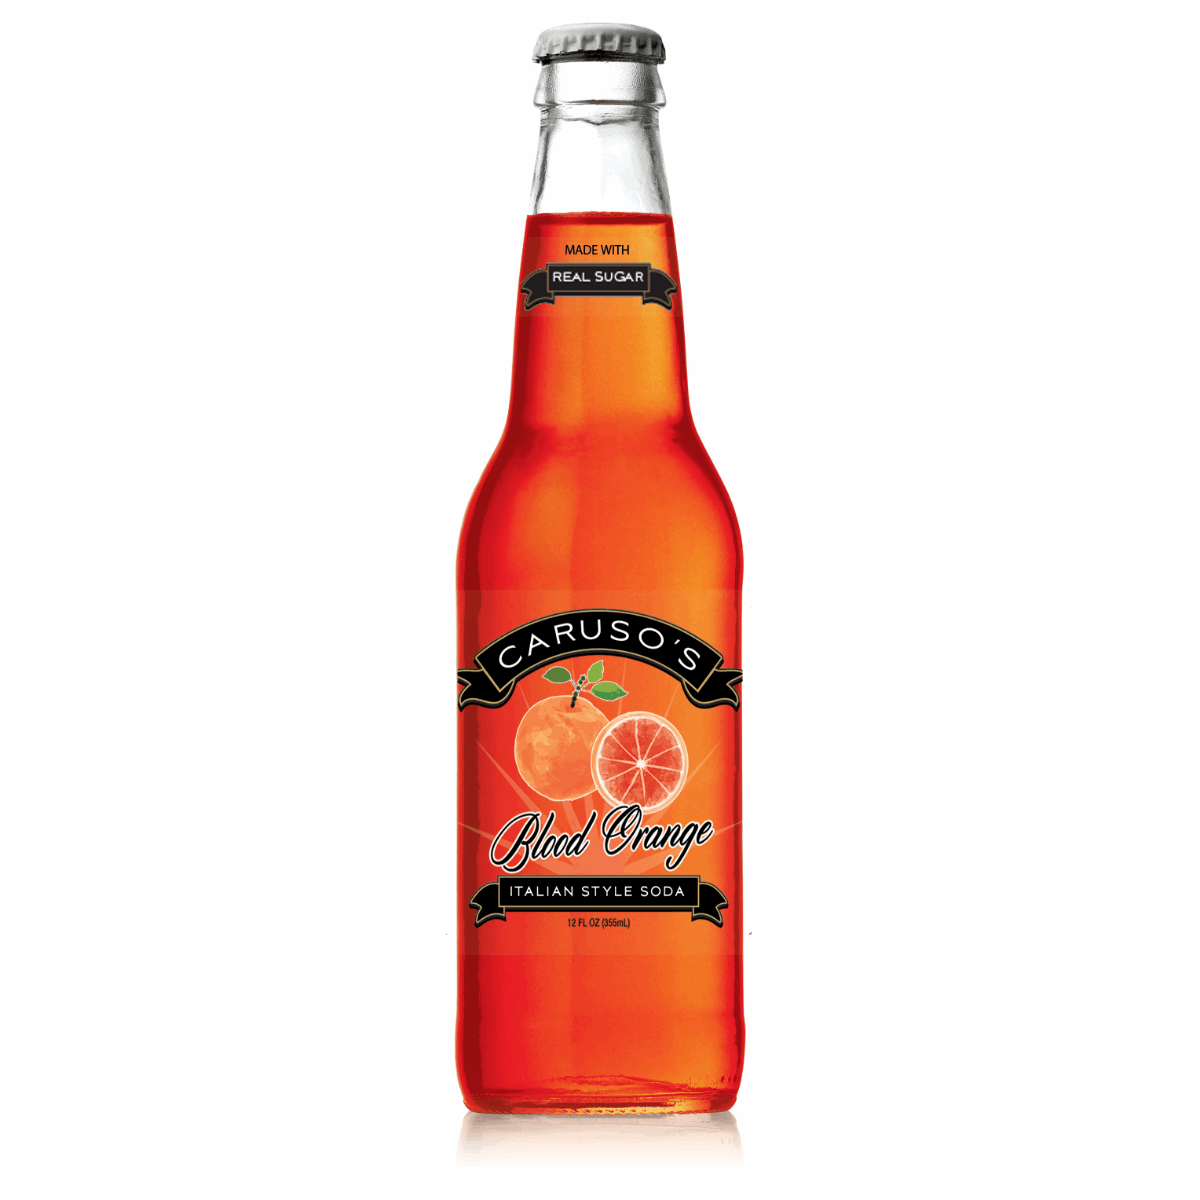 12oz bottle of Caruso's Blood Orange Soda